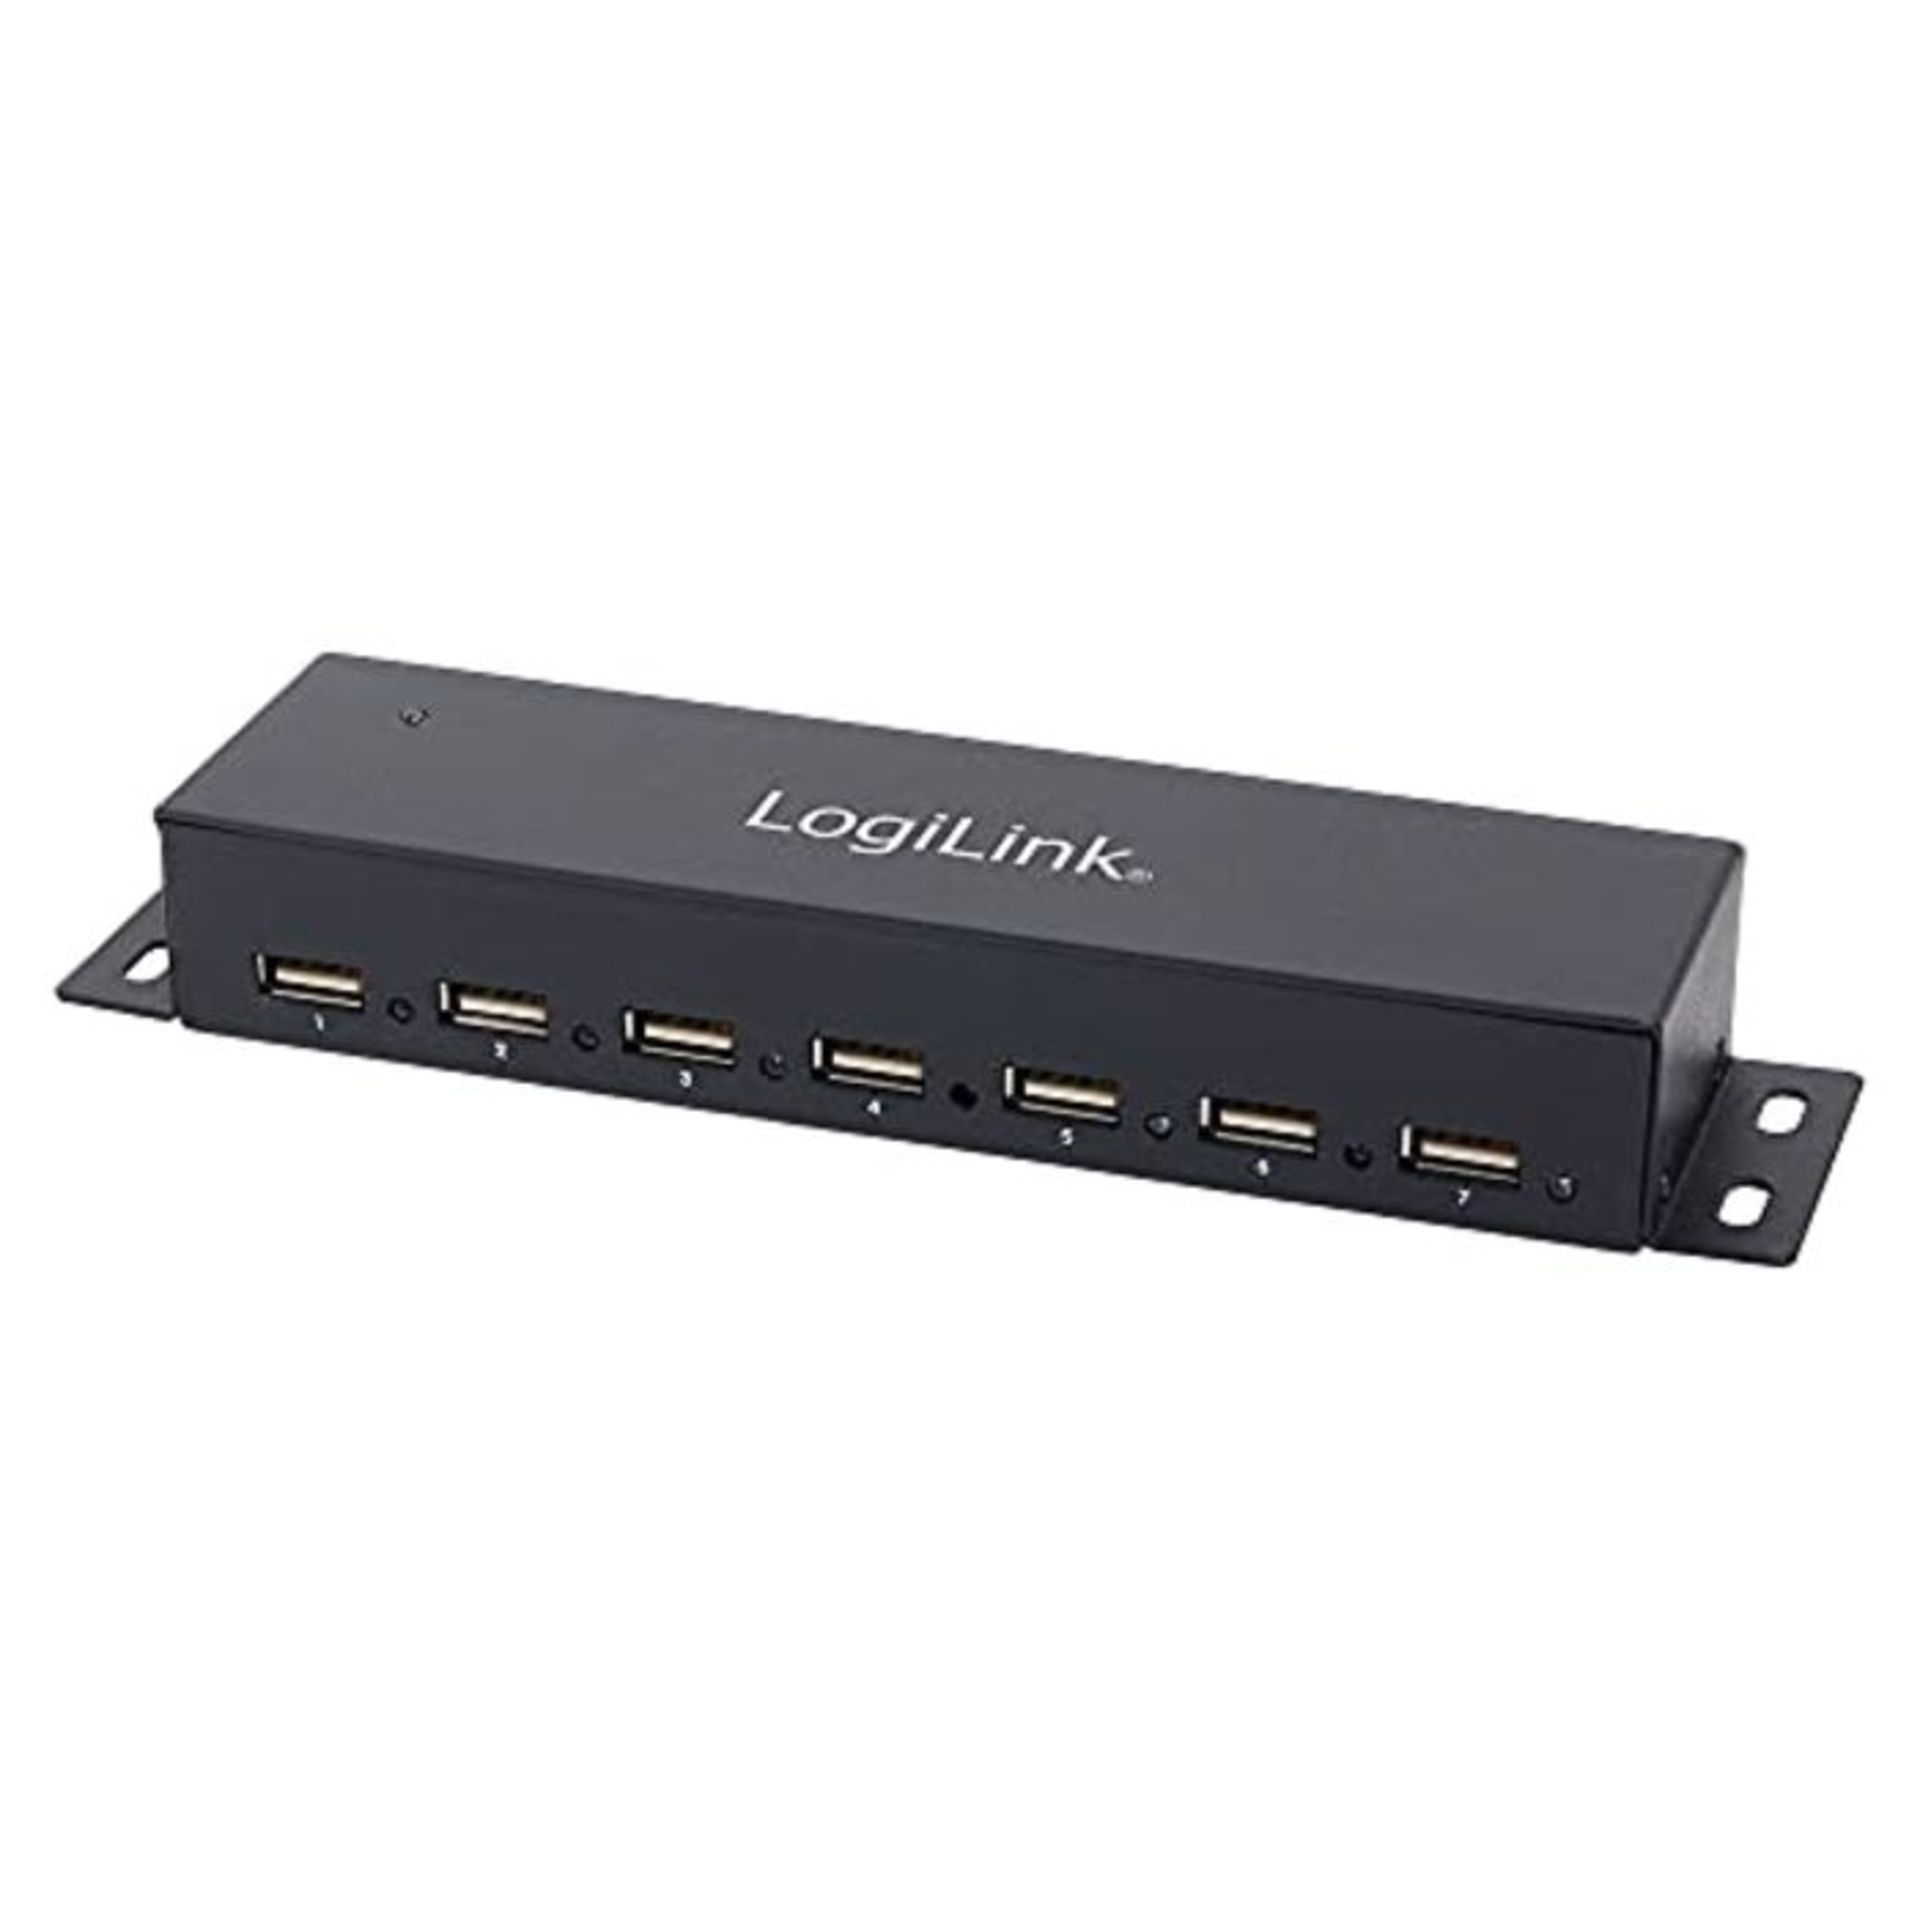 Logilink USB HUB 7-port metal LED meters. PSU